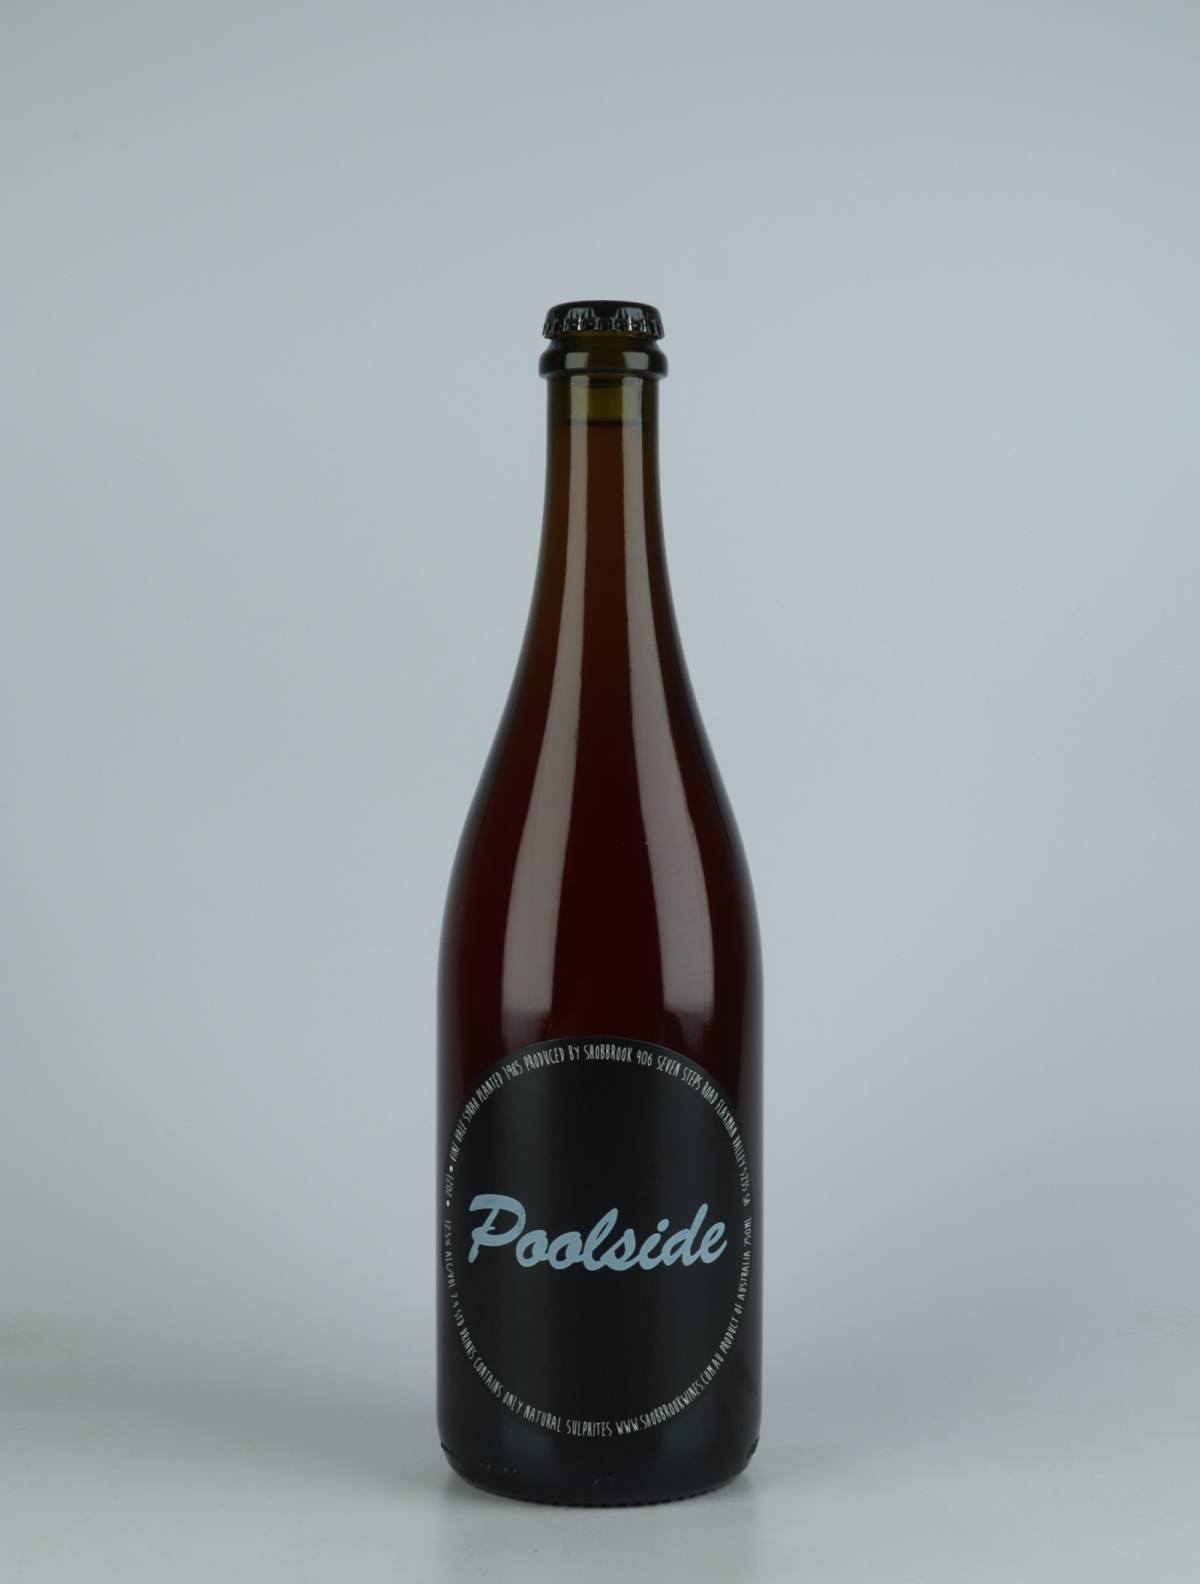 En flaske 2021 Poolside Rosé fra Tom Shobbrook, Adelaide Hills i Australien